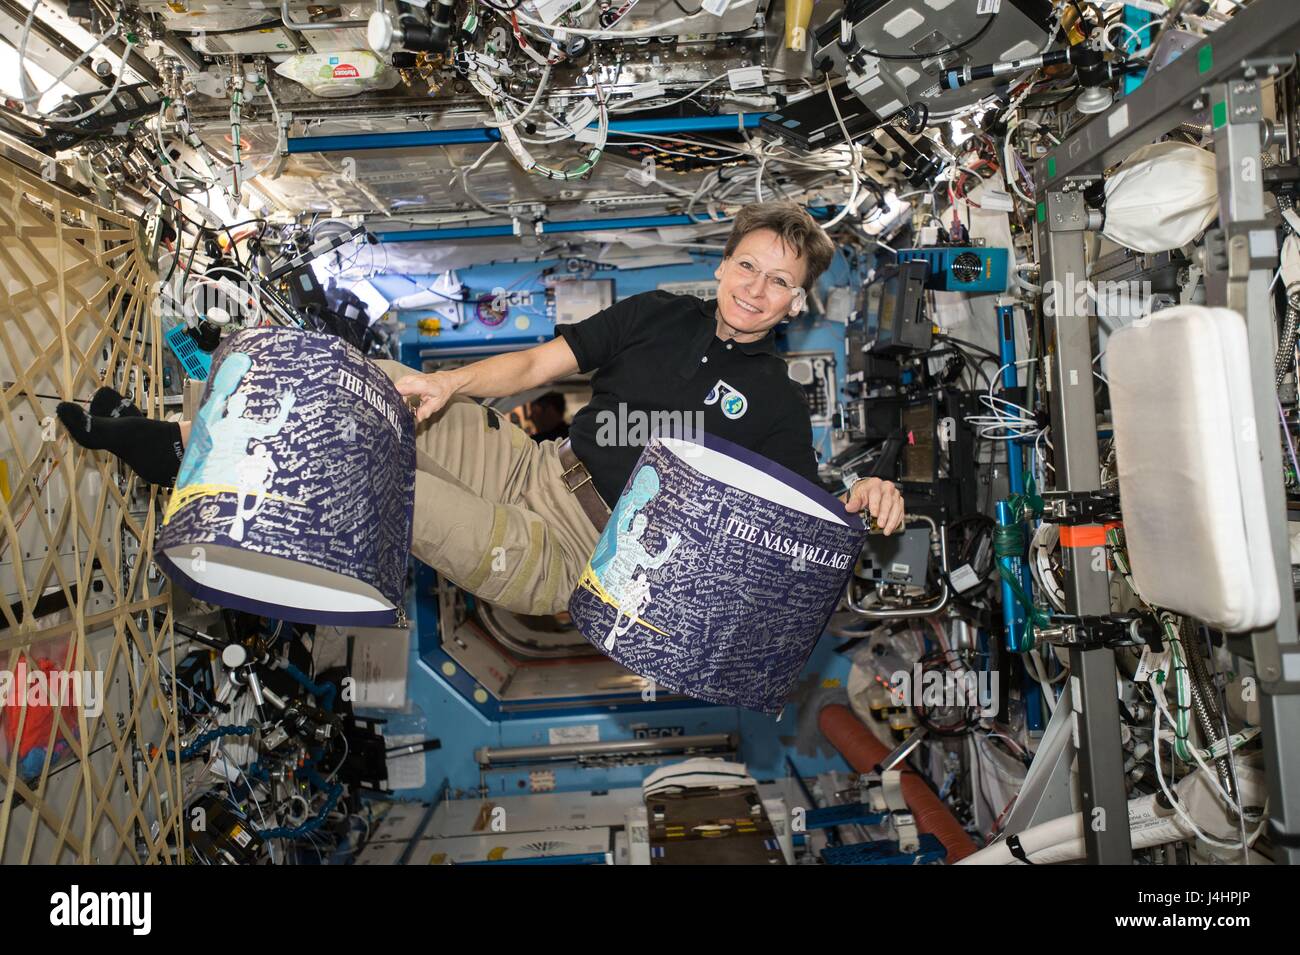 NASA International Space Station Expedition 50 erstklassige Crew Mitglied Astronaut, die Peggy Whitson schwimmt mit dem NASA-Dorf-Banner in der ISS U.S. Destiny-Labormodul 22. Februar 2017 in der Erdumlaufbahn.     (Foto von der NASA über Planetpix) Stockfoto